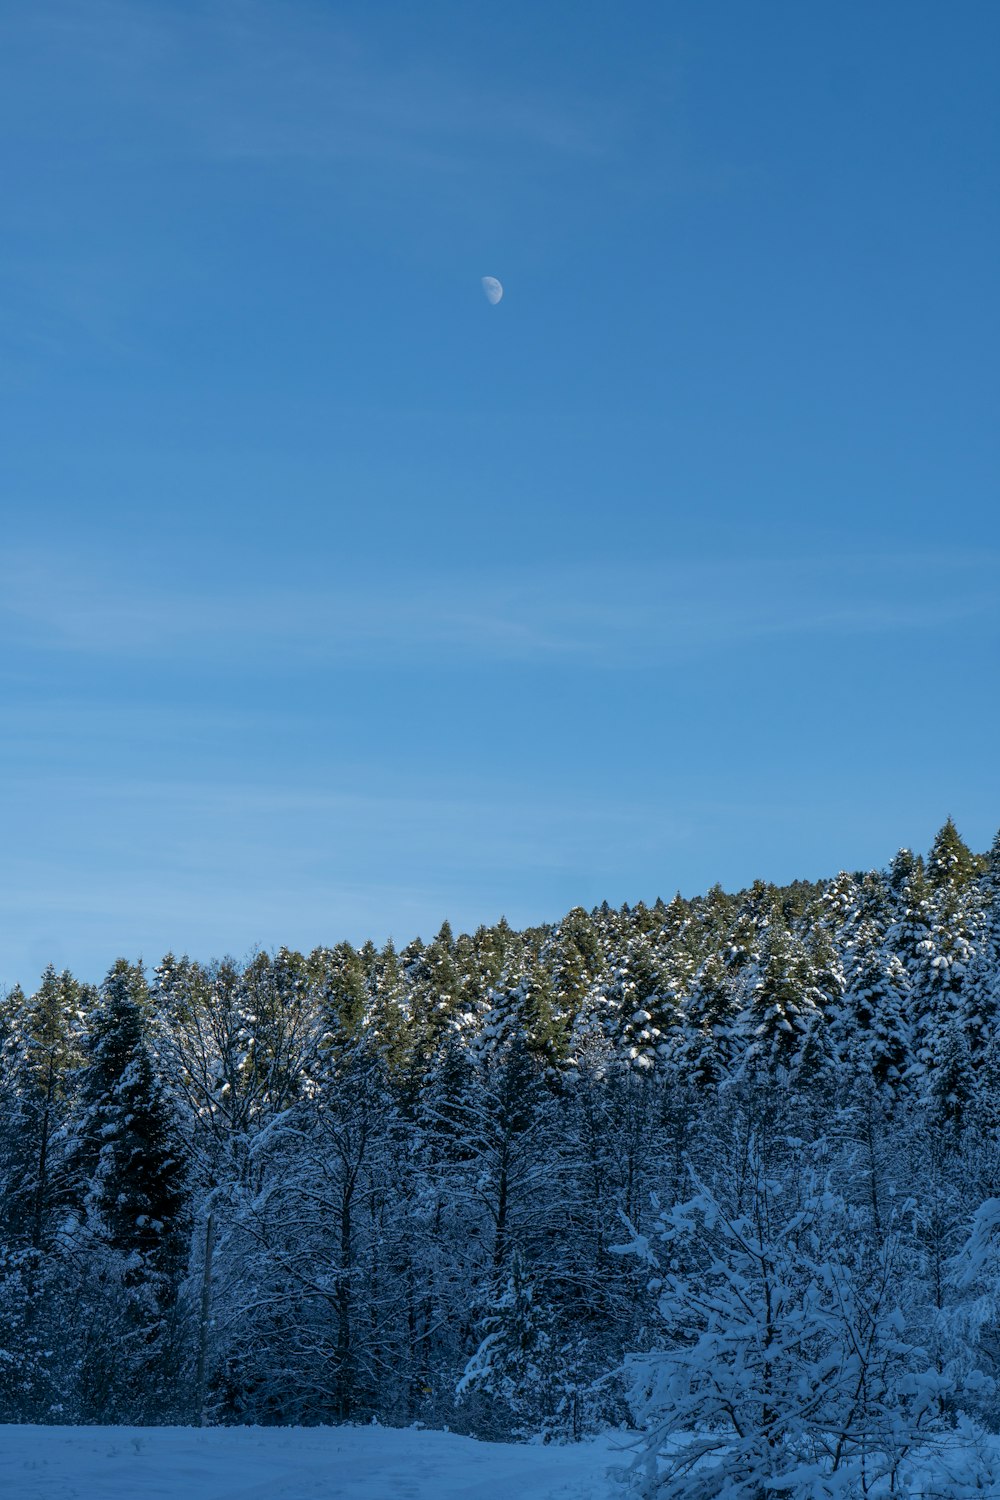 Un campo innevato con alberi e una luna nel cielo